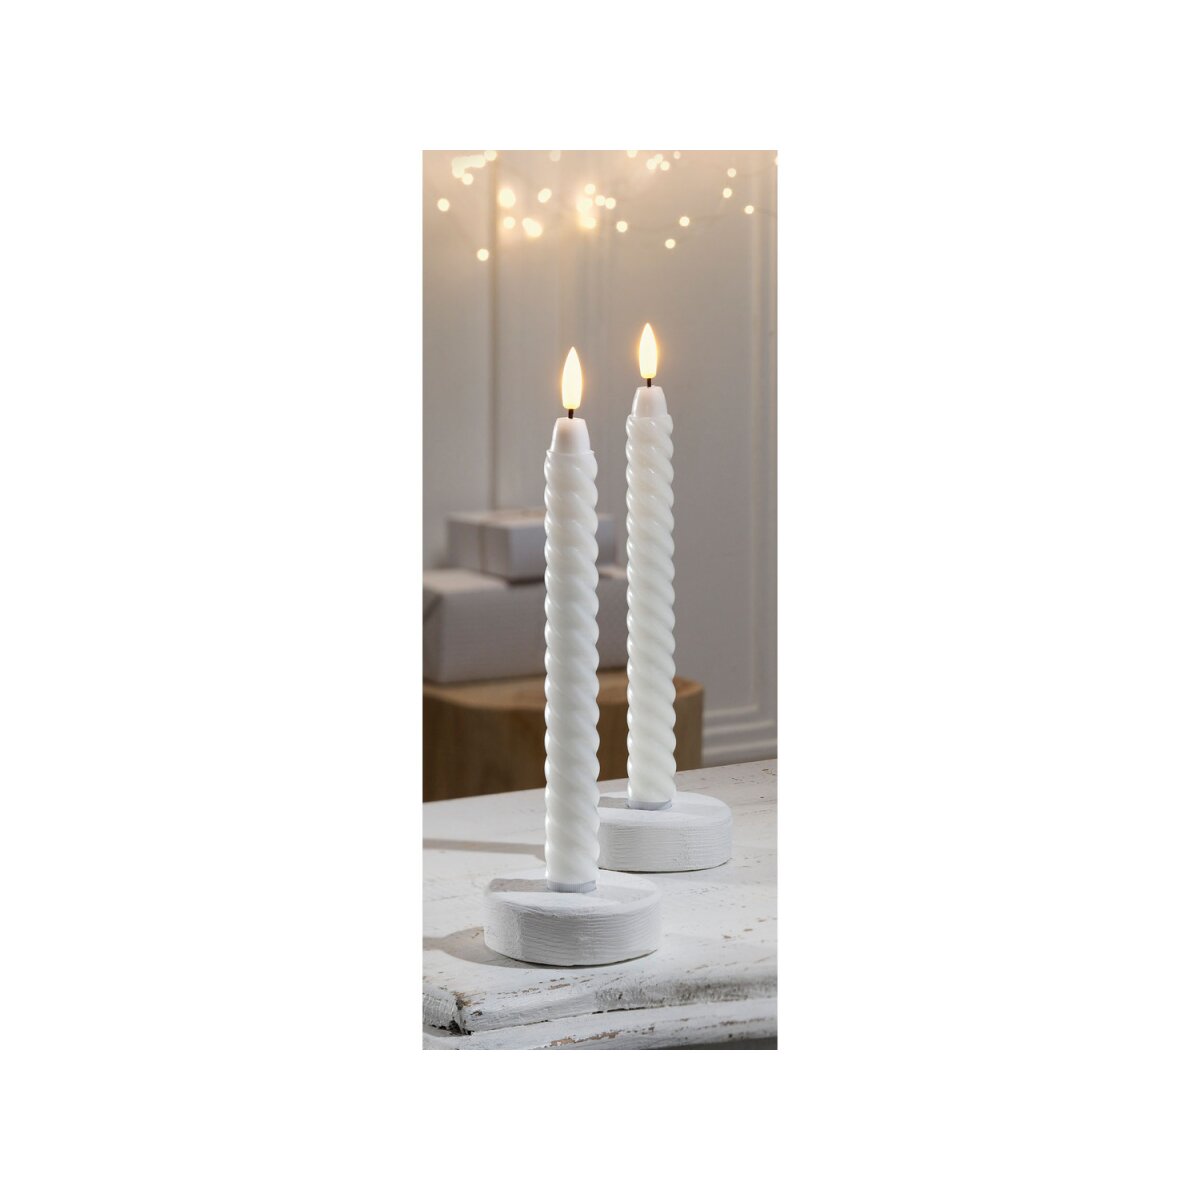 LIVARNO home LED-Kerzen aus Echtwachs, batteriebetrieben, 2 Stk. weiß -  B-Ware sehr gut, 5,99 €